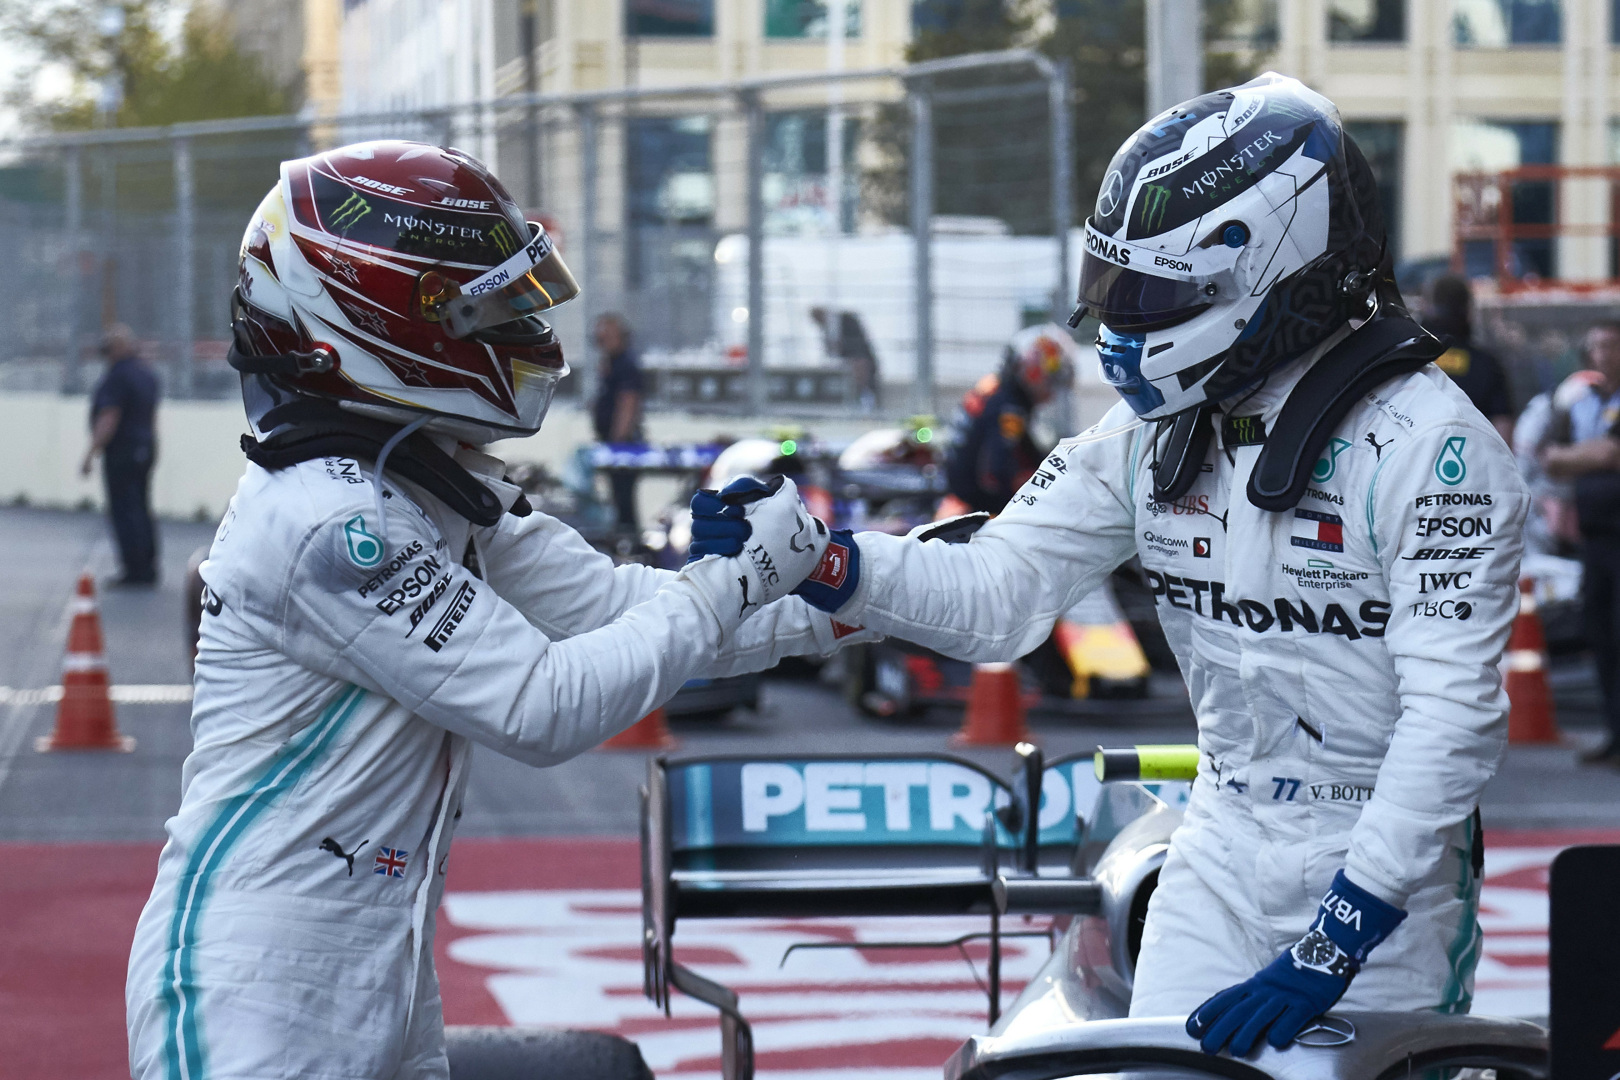 Photo of Bottas wins in Baku ahead of Hamilton, Vettel